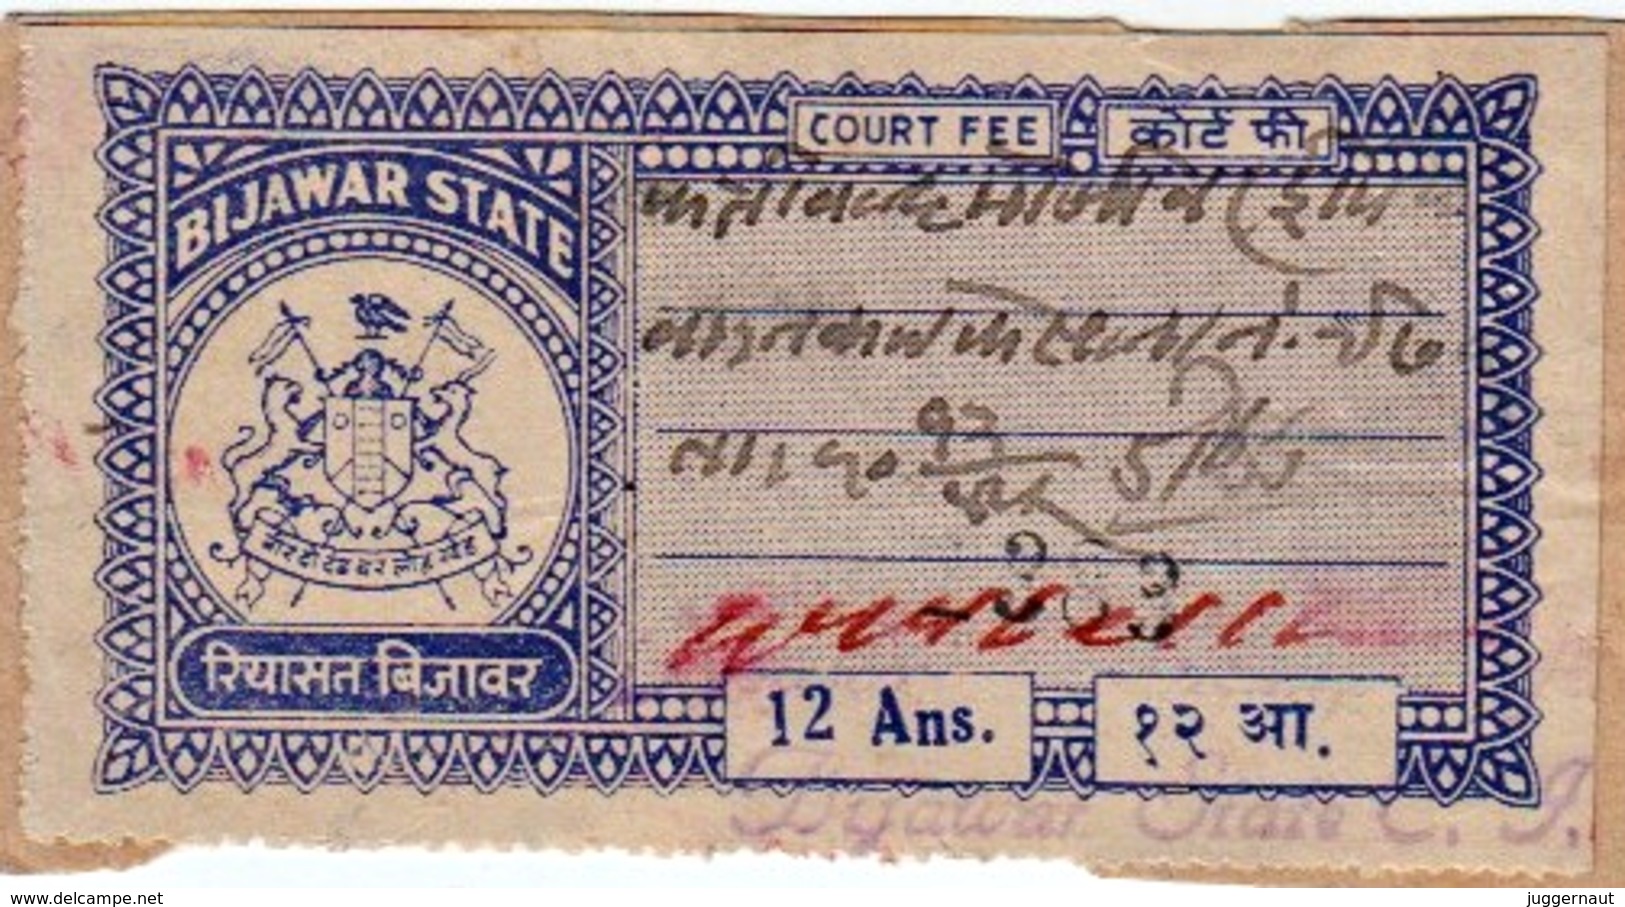 INDIA BIJAWAR PRINCELY STATE 12-ANNAS COURT FEE STAMP 1944-48 GOOD/USED - Bijawar